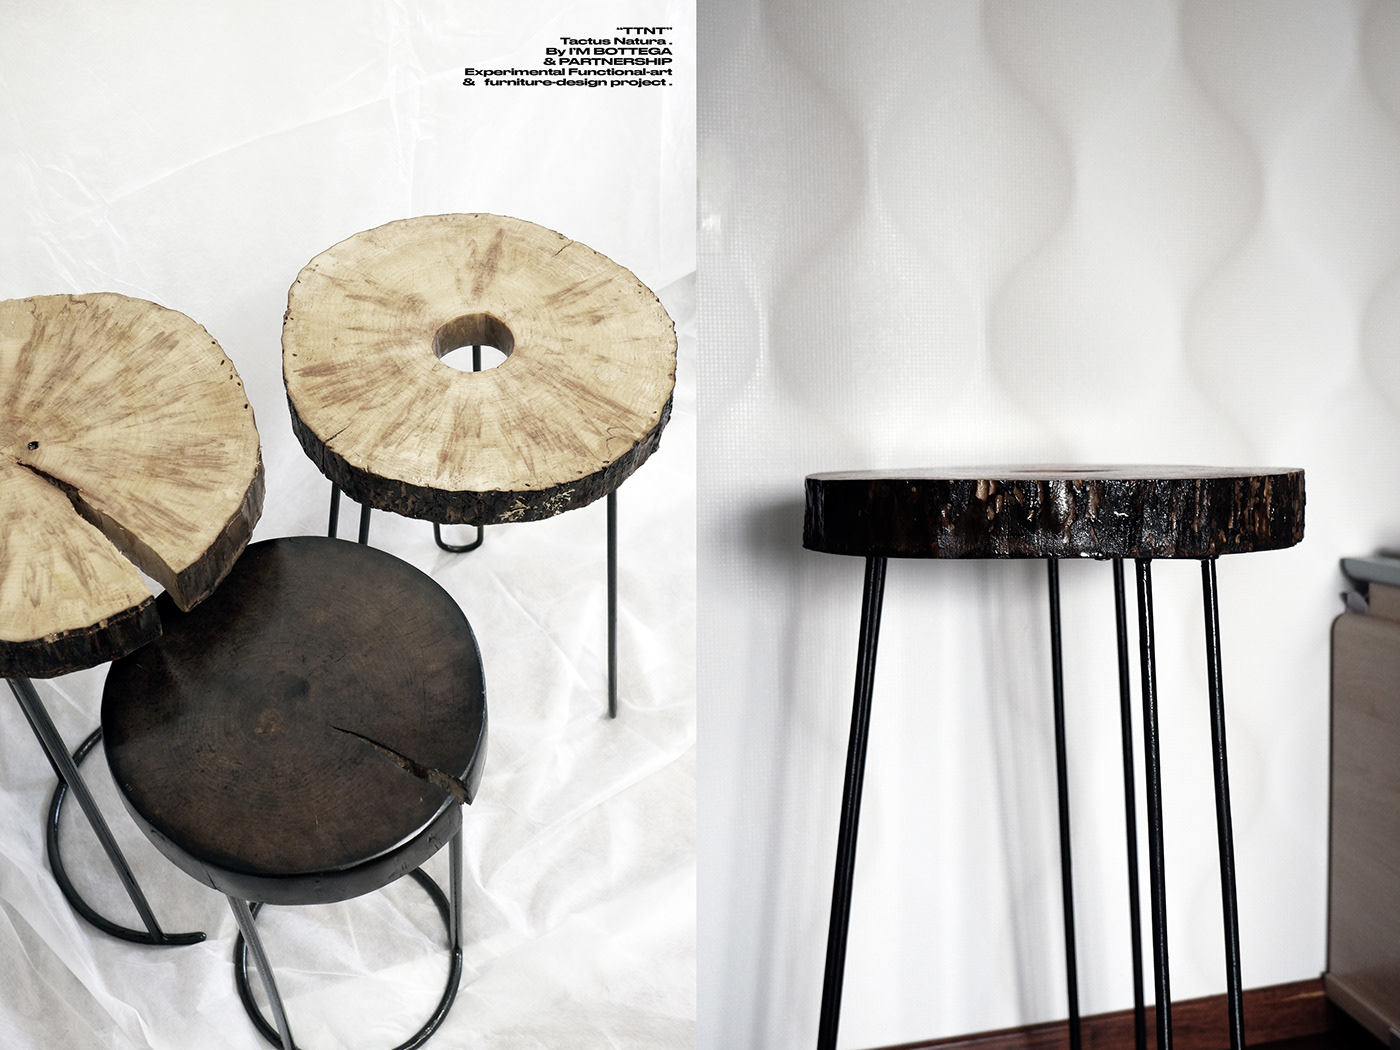 design furniture design  avantgarde Brutalism interior design  furniture Art Objects designboom prom design wooden